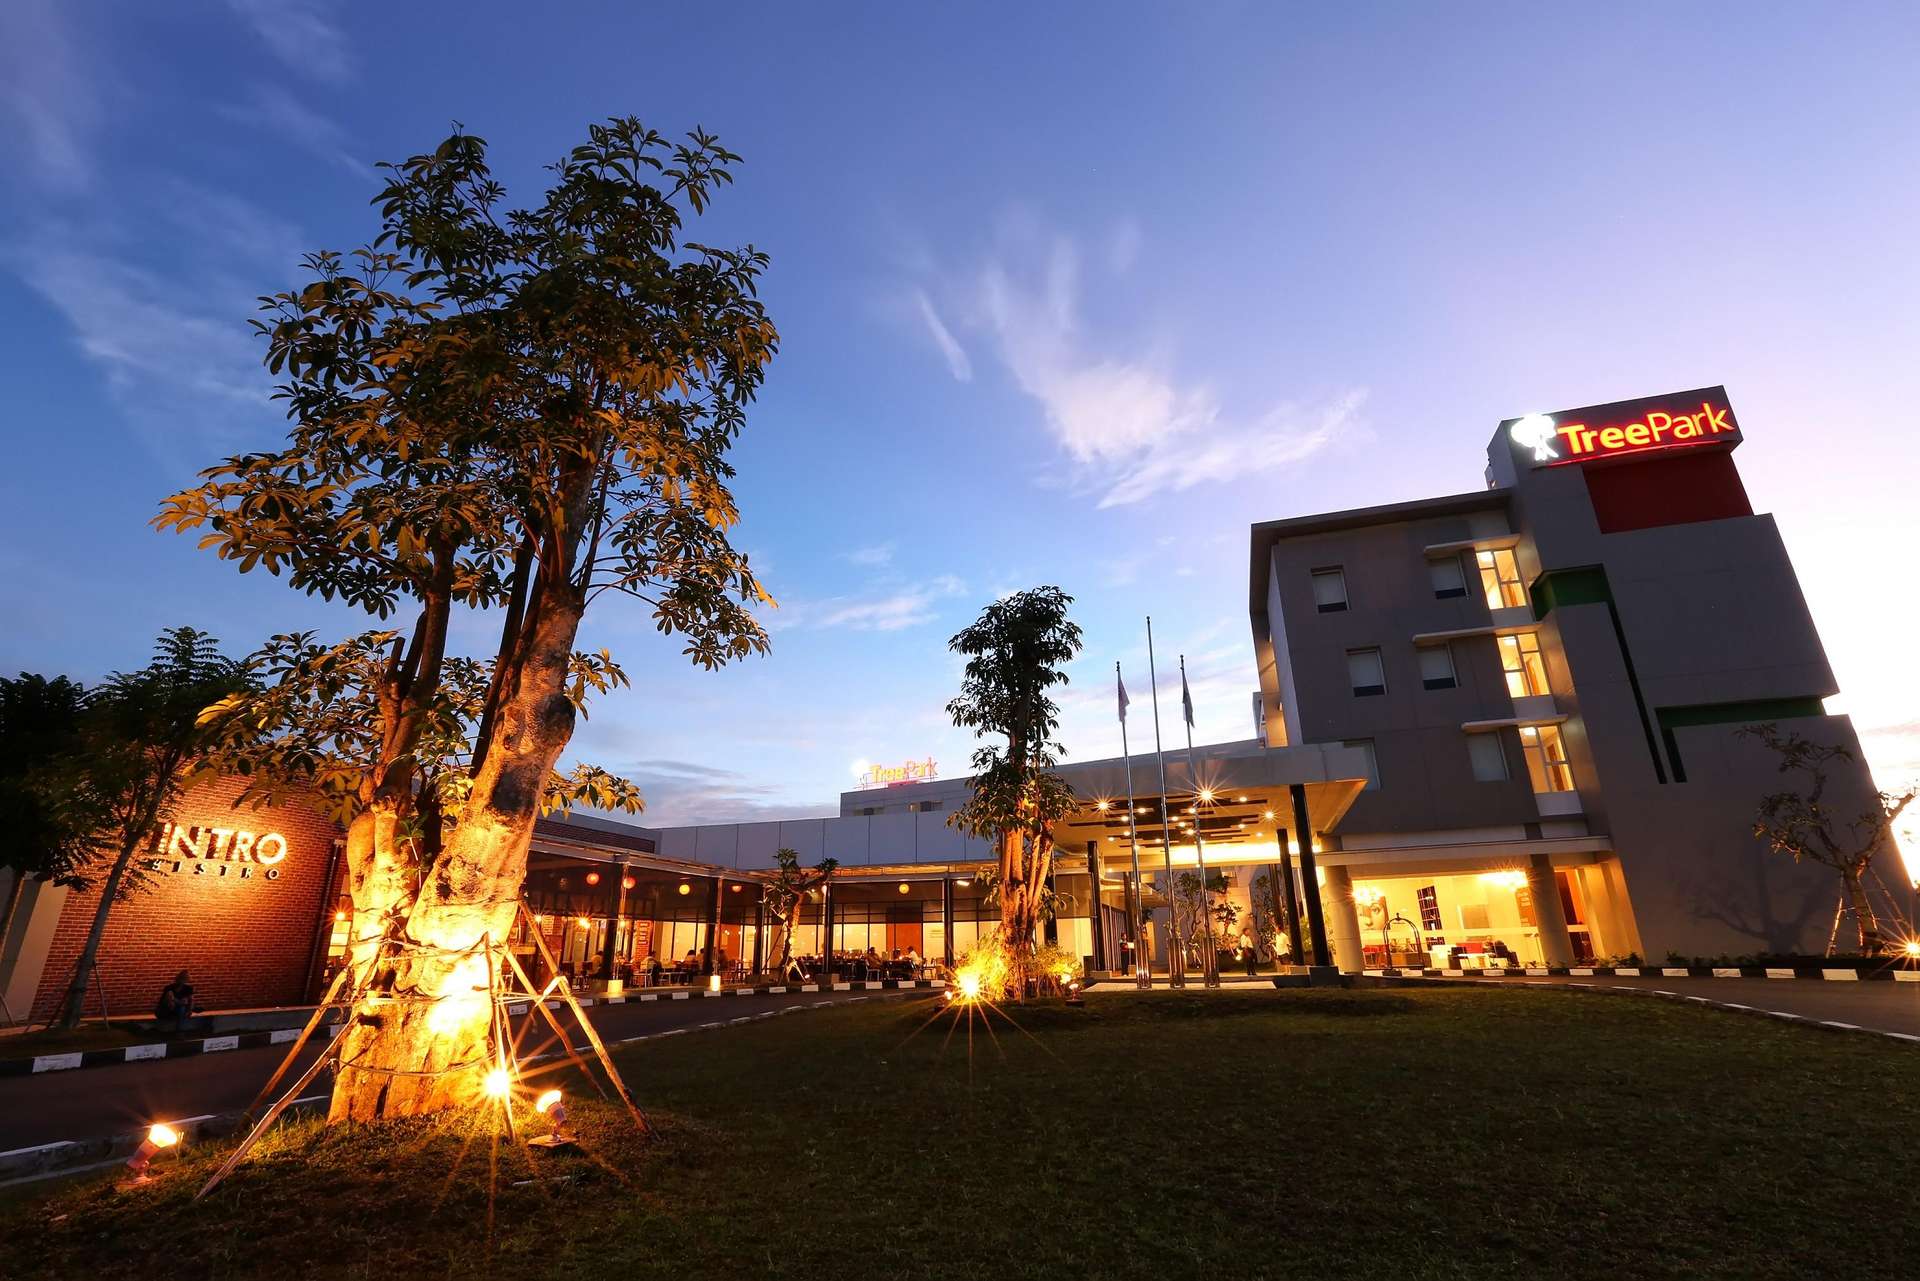 Harga kamar TreePark Hotel Banjarmasin, Banjarmasin Timur untuk tanggal